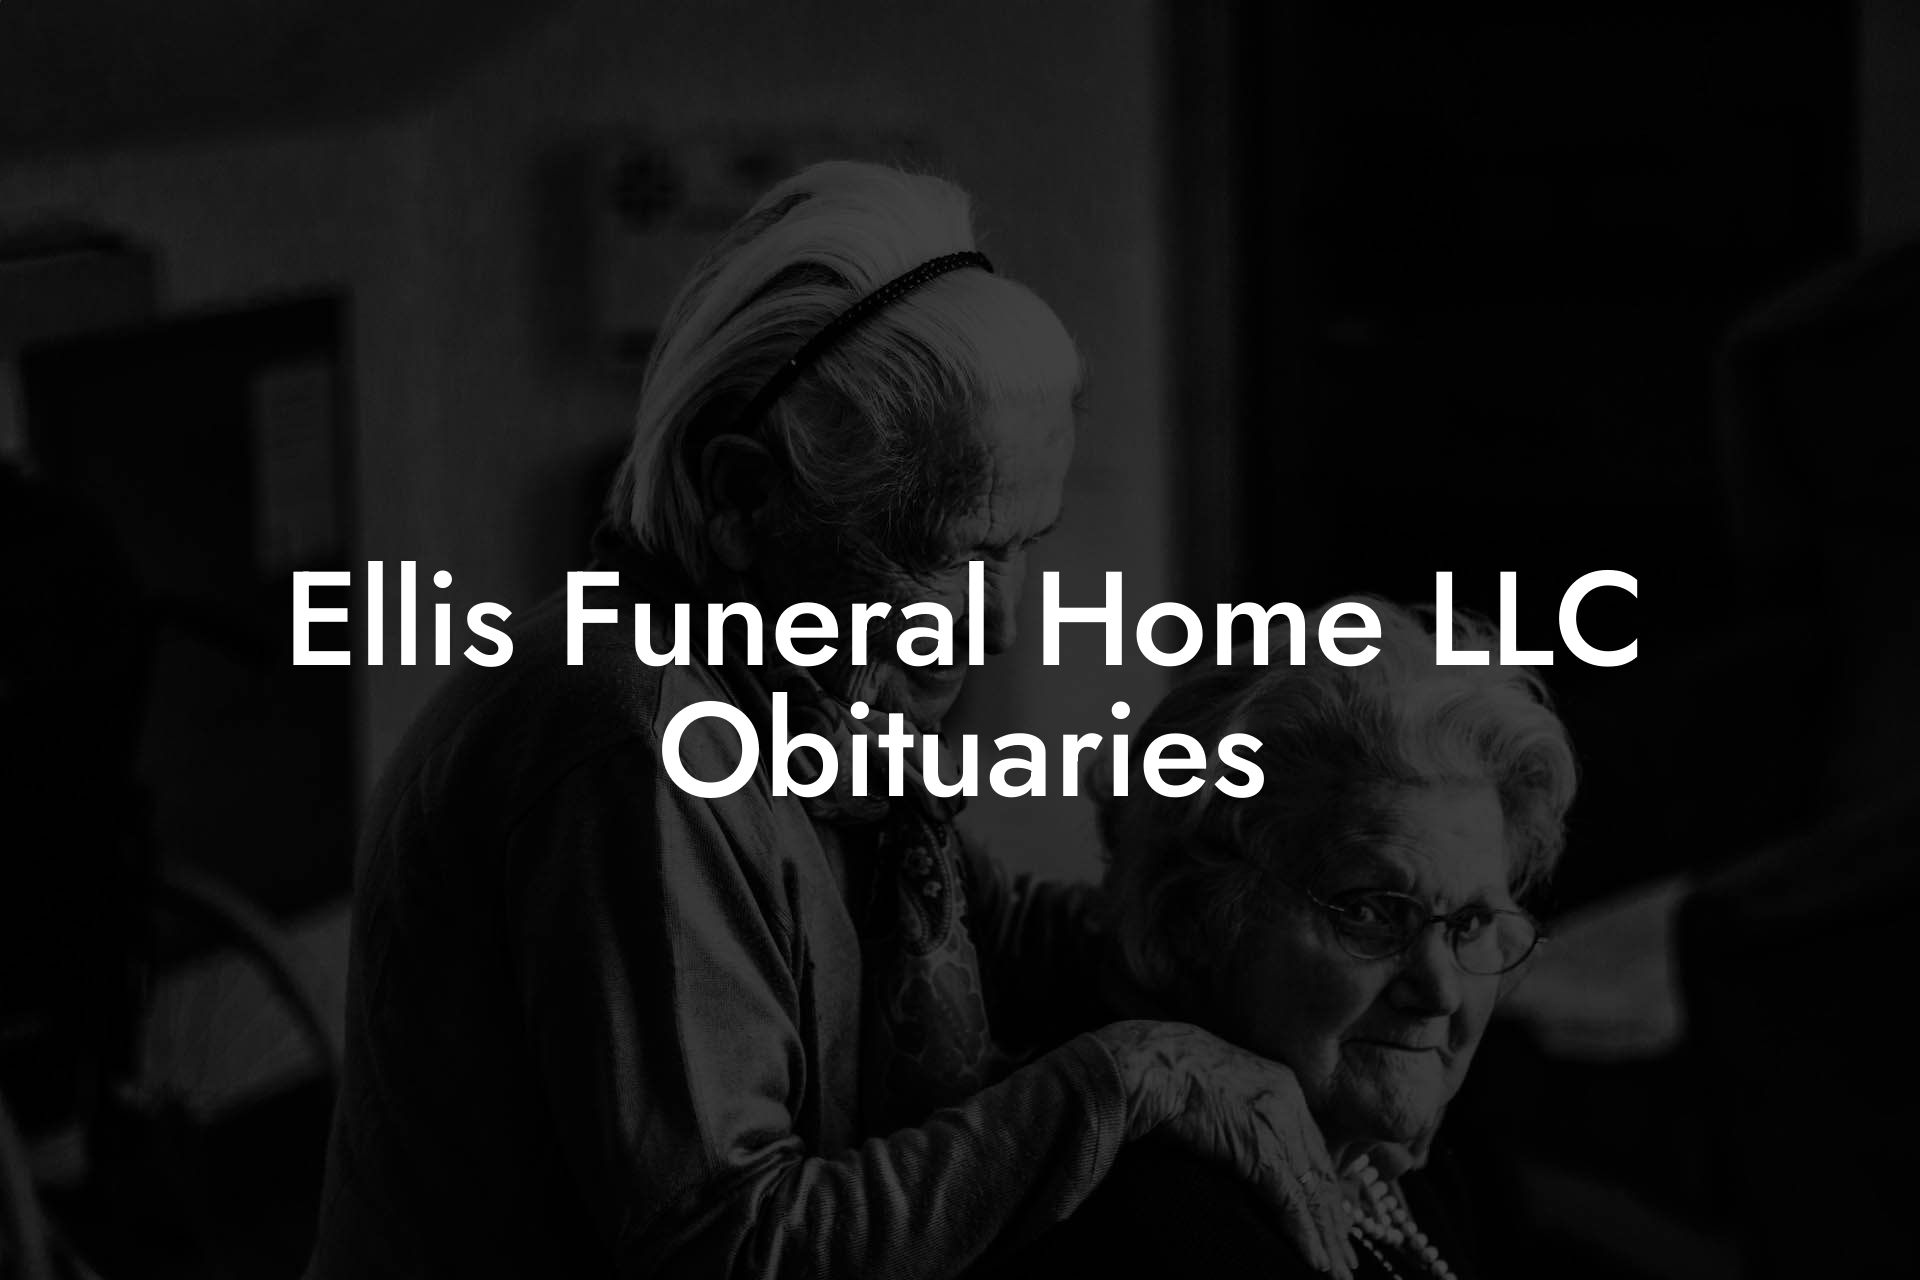 Ellis Funeral Home LLC Obituaries